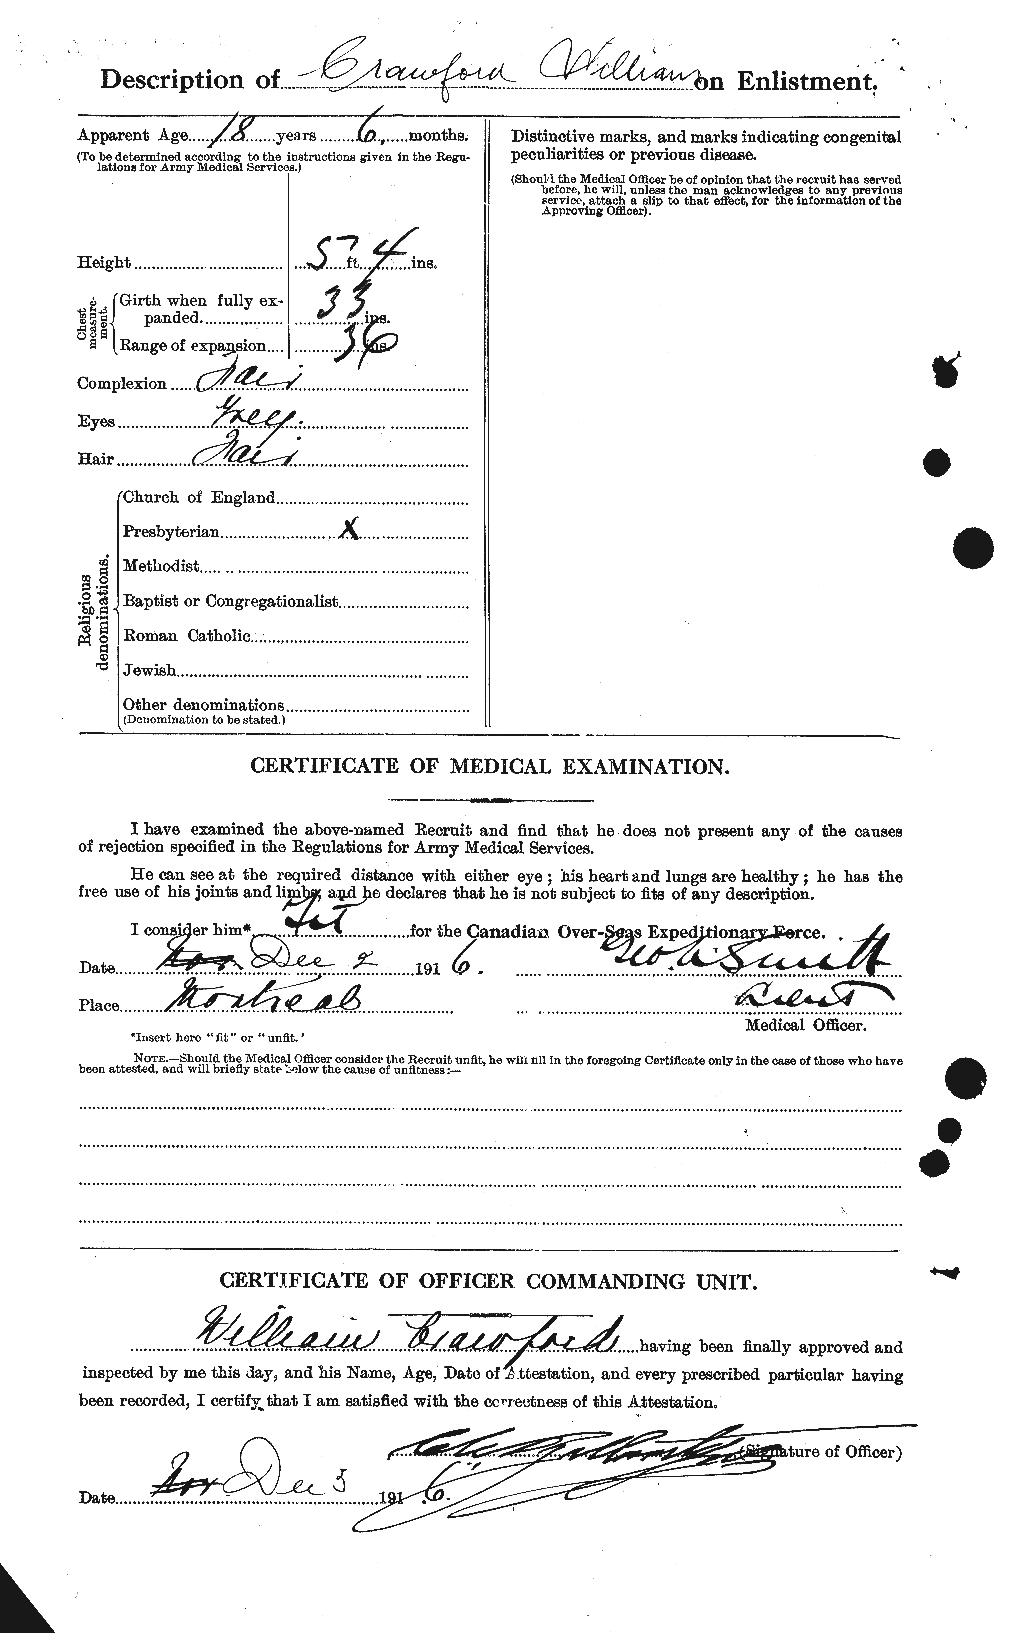 Dossiers du Personnel de la Première Guerre mondiale - CEC 061169b